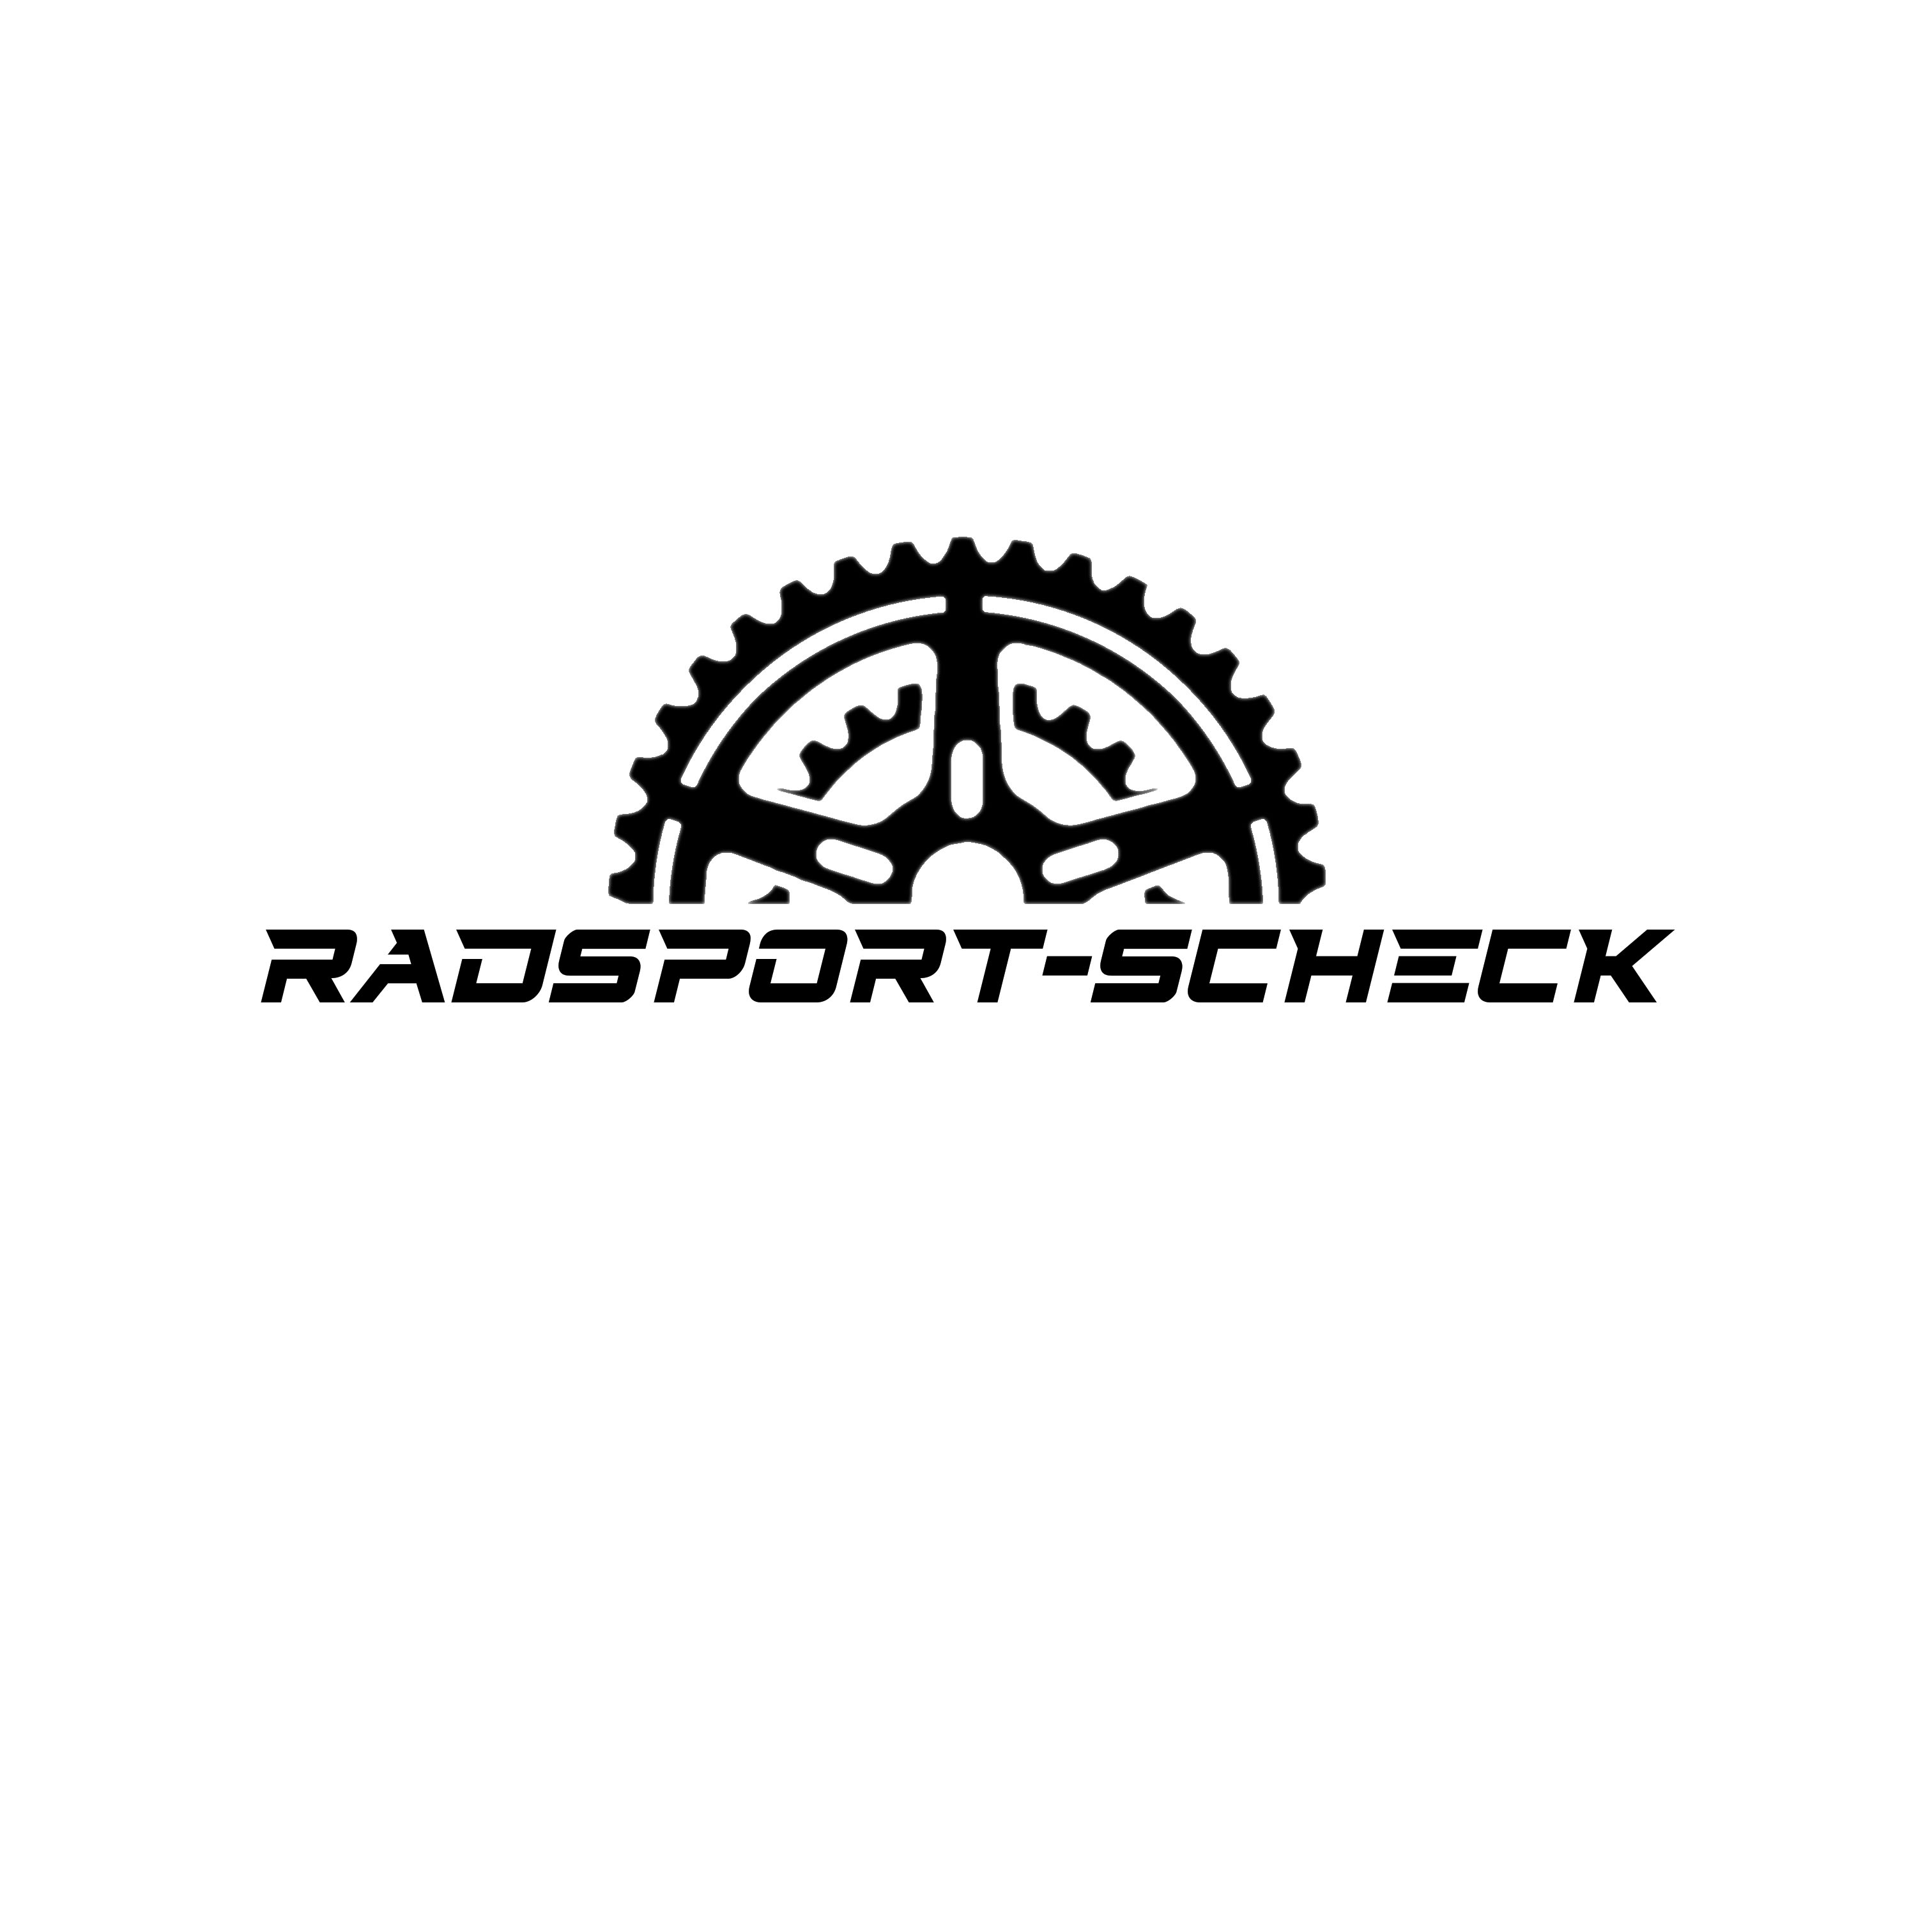 (c) Radsport-scheck.de